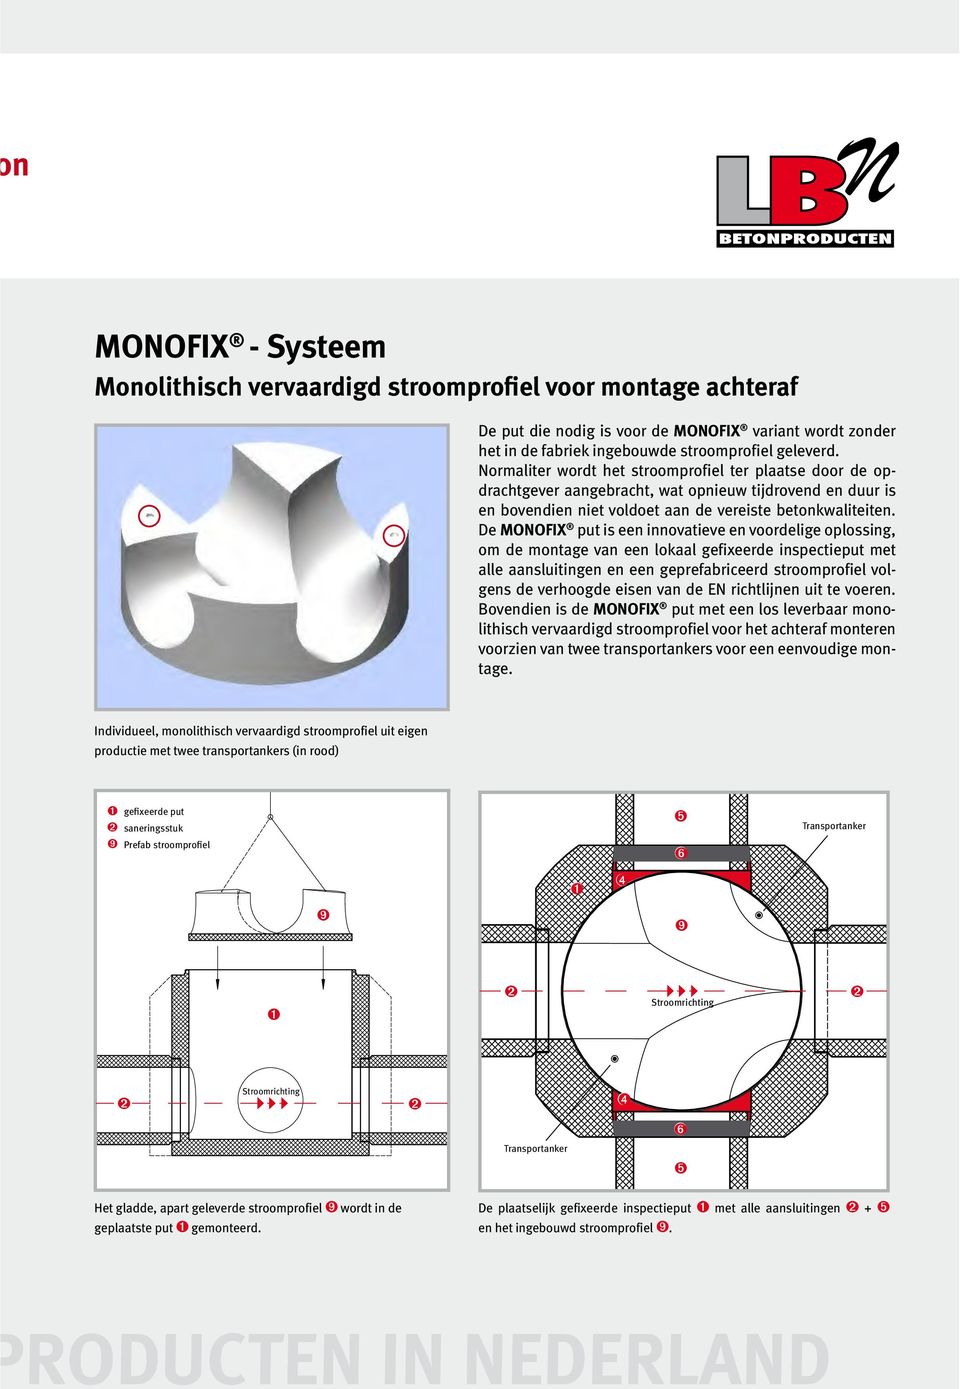 De MONOFIX put is een innovatieve en voordelige oplossing, om de montage van een lokaal gefixeerde inspectieput met alle aansluitingen en een geprefabriceerd stroomprofiel volgens de verhoogde eisen